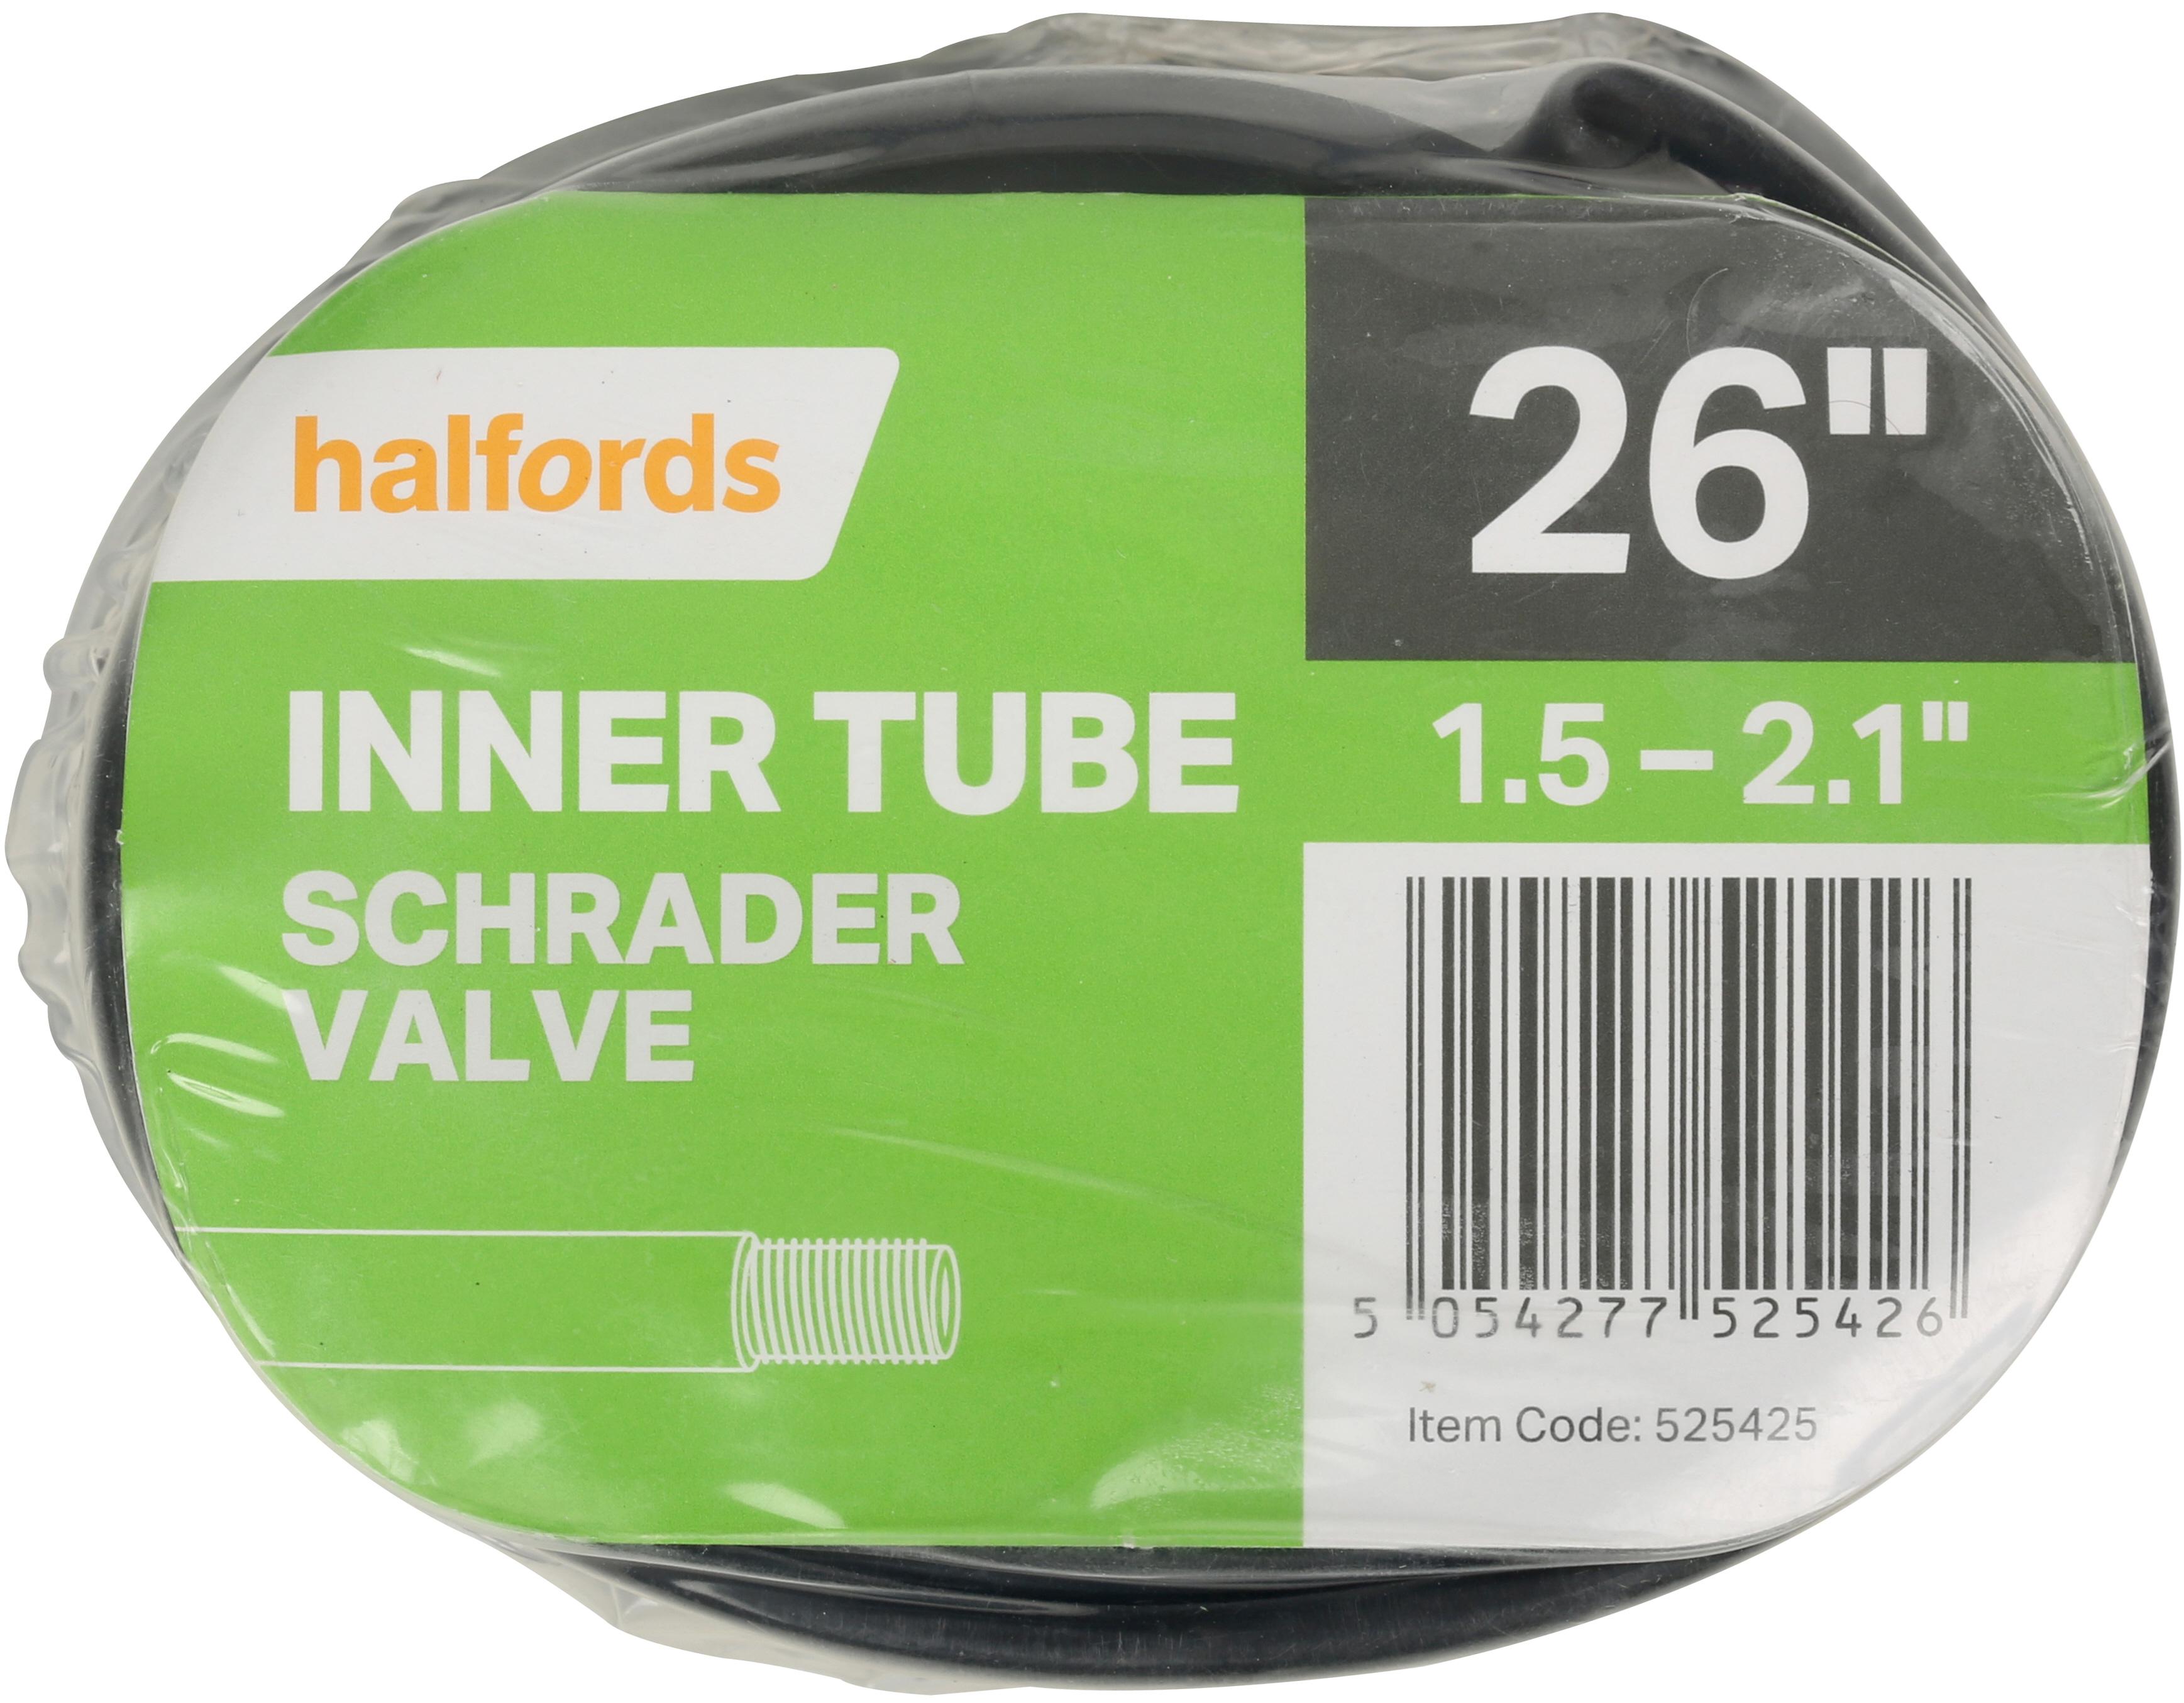 halfords slime tubes